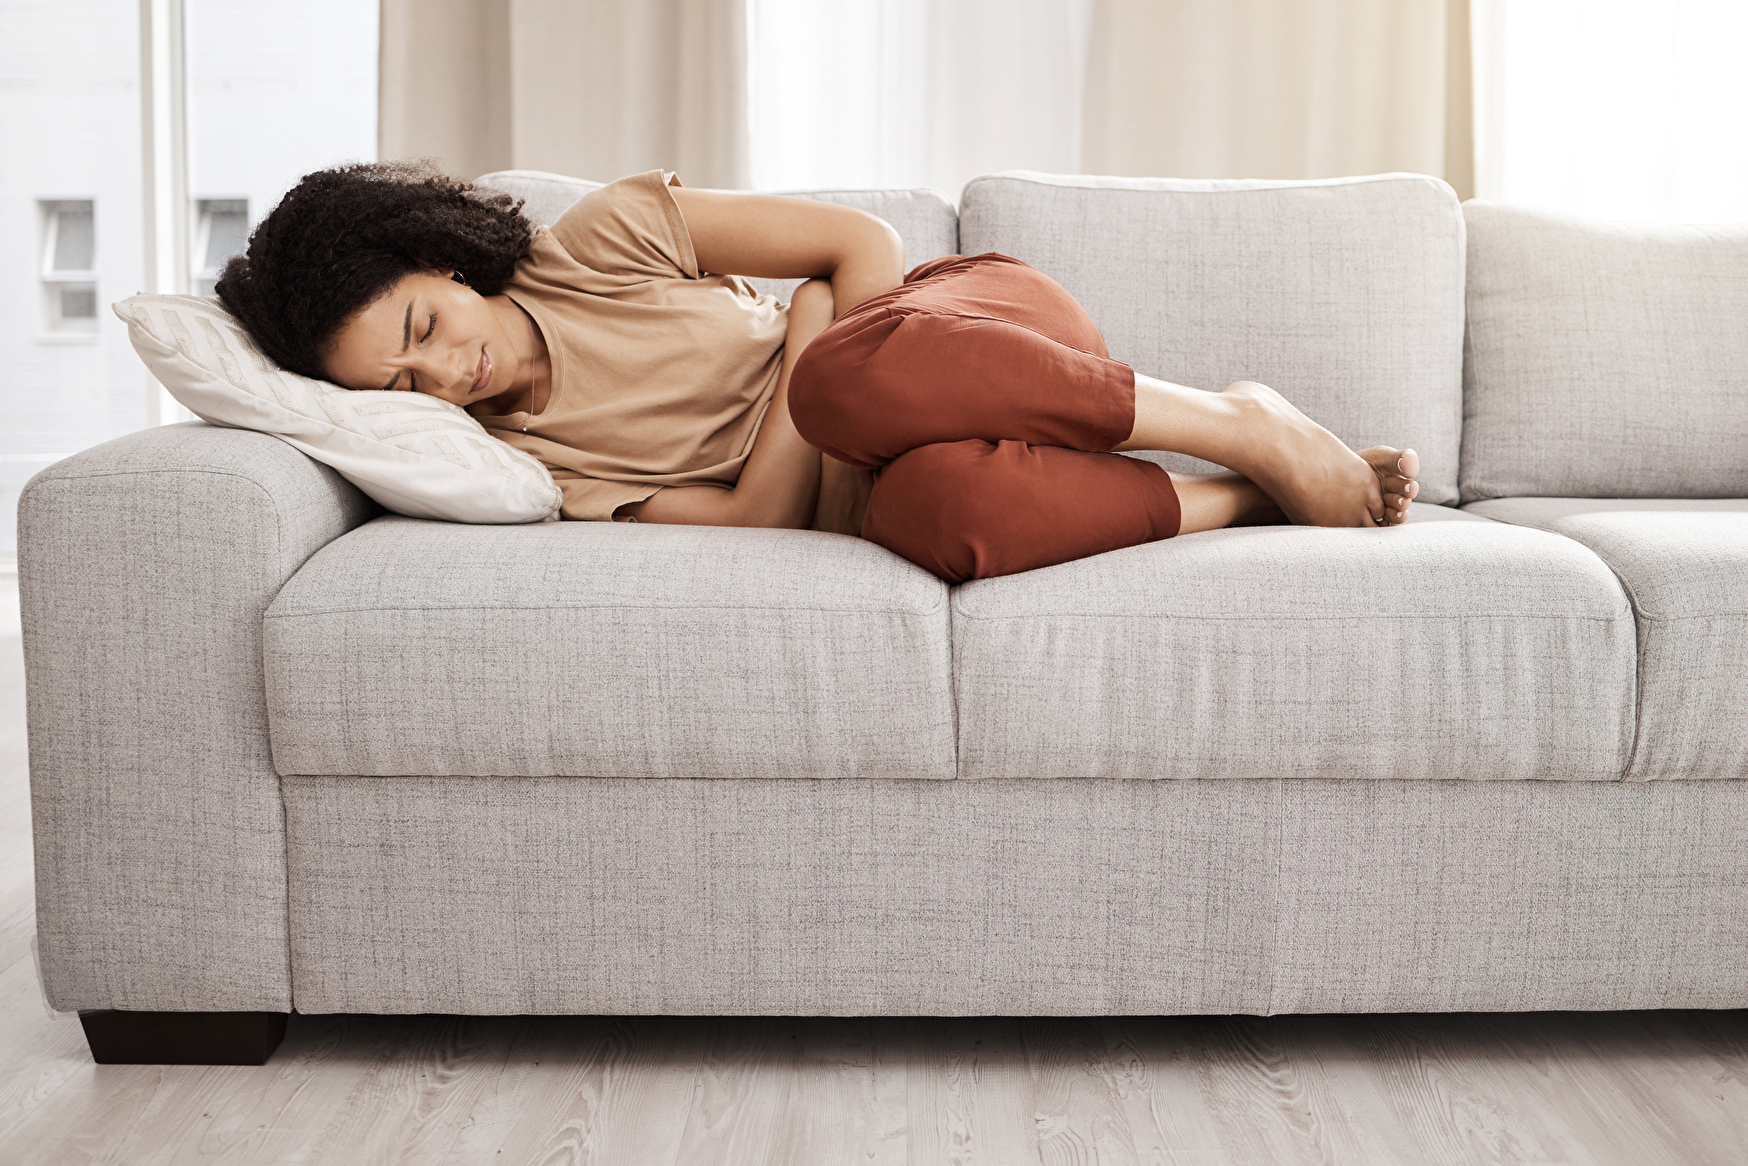 Eine Frau schläft auf einer bequemen Couch in einem gemütlichen Wohnzimmer.